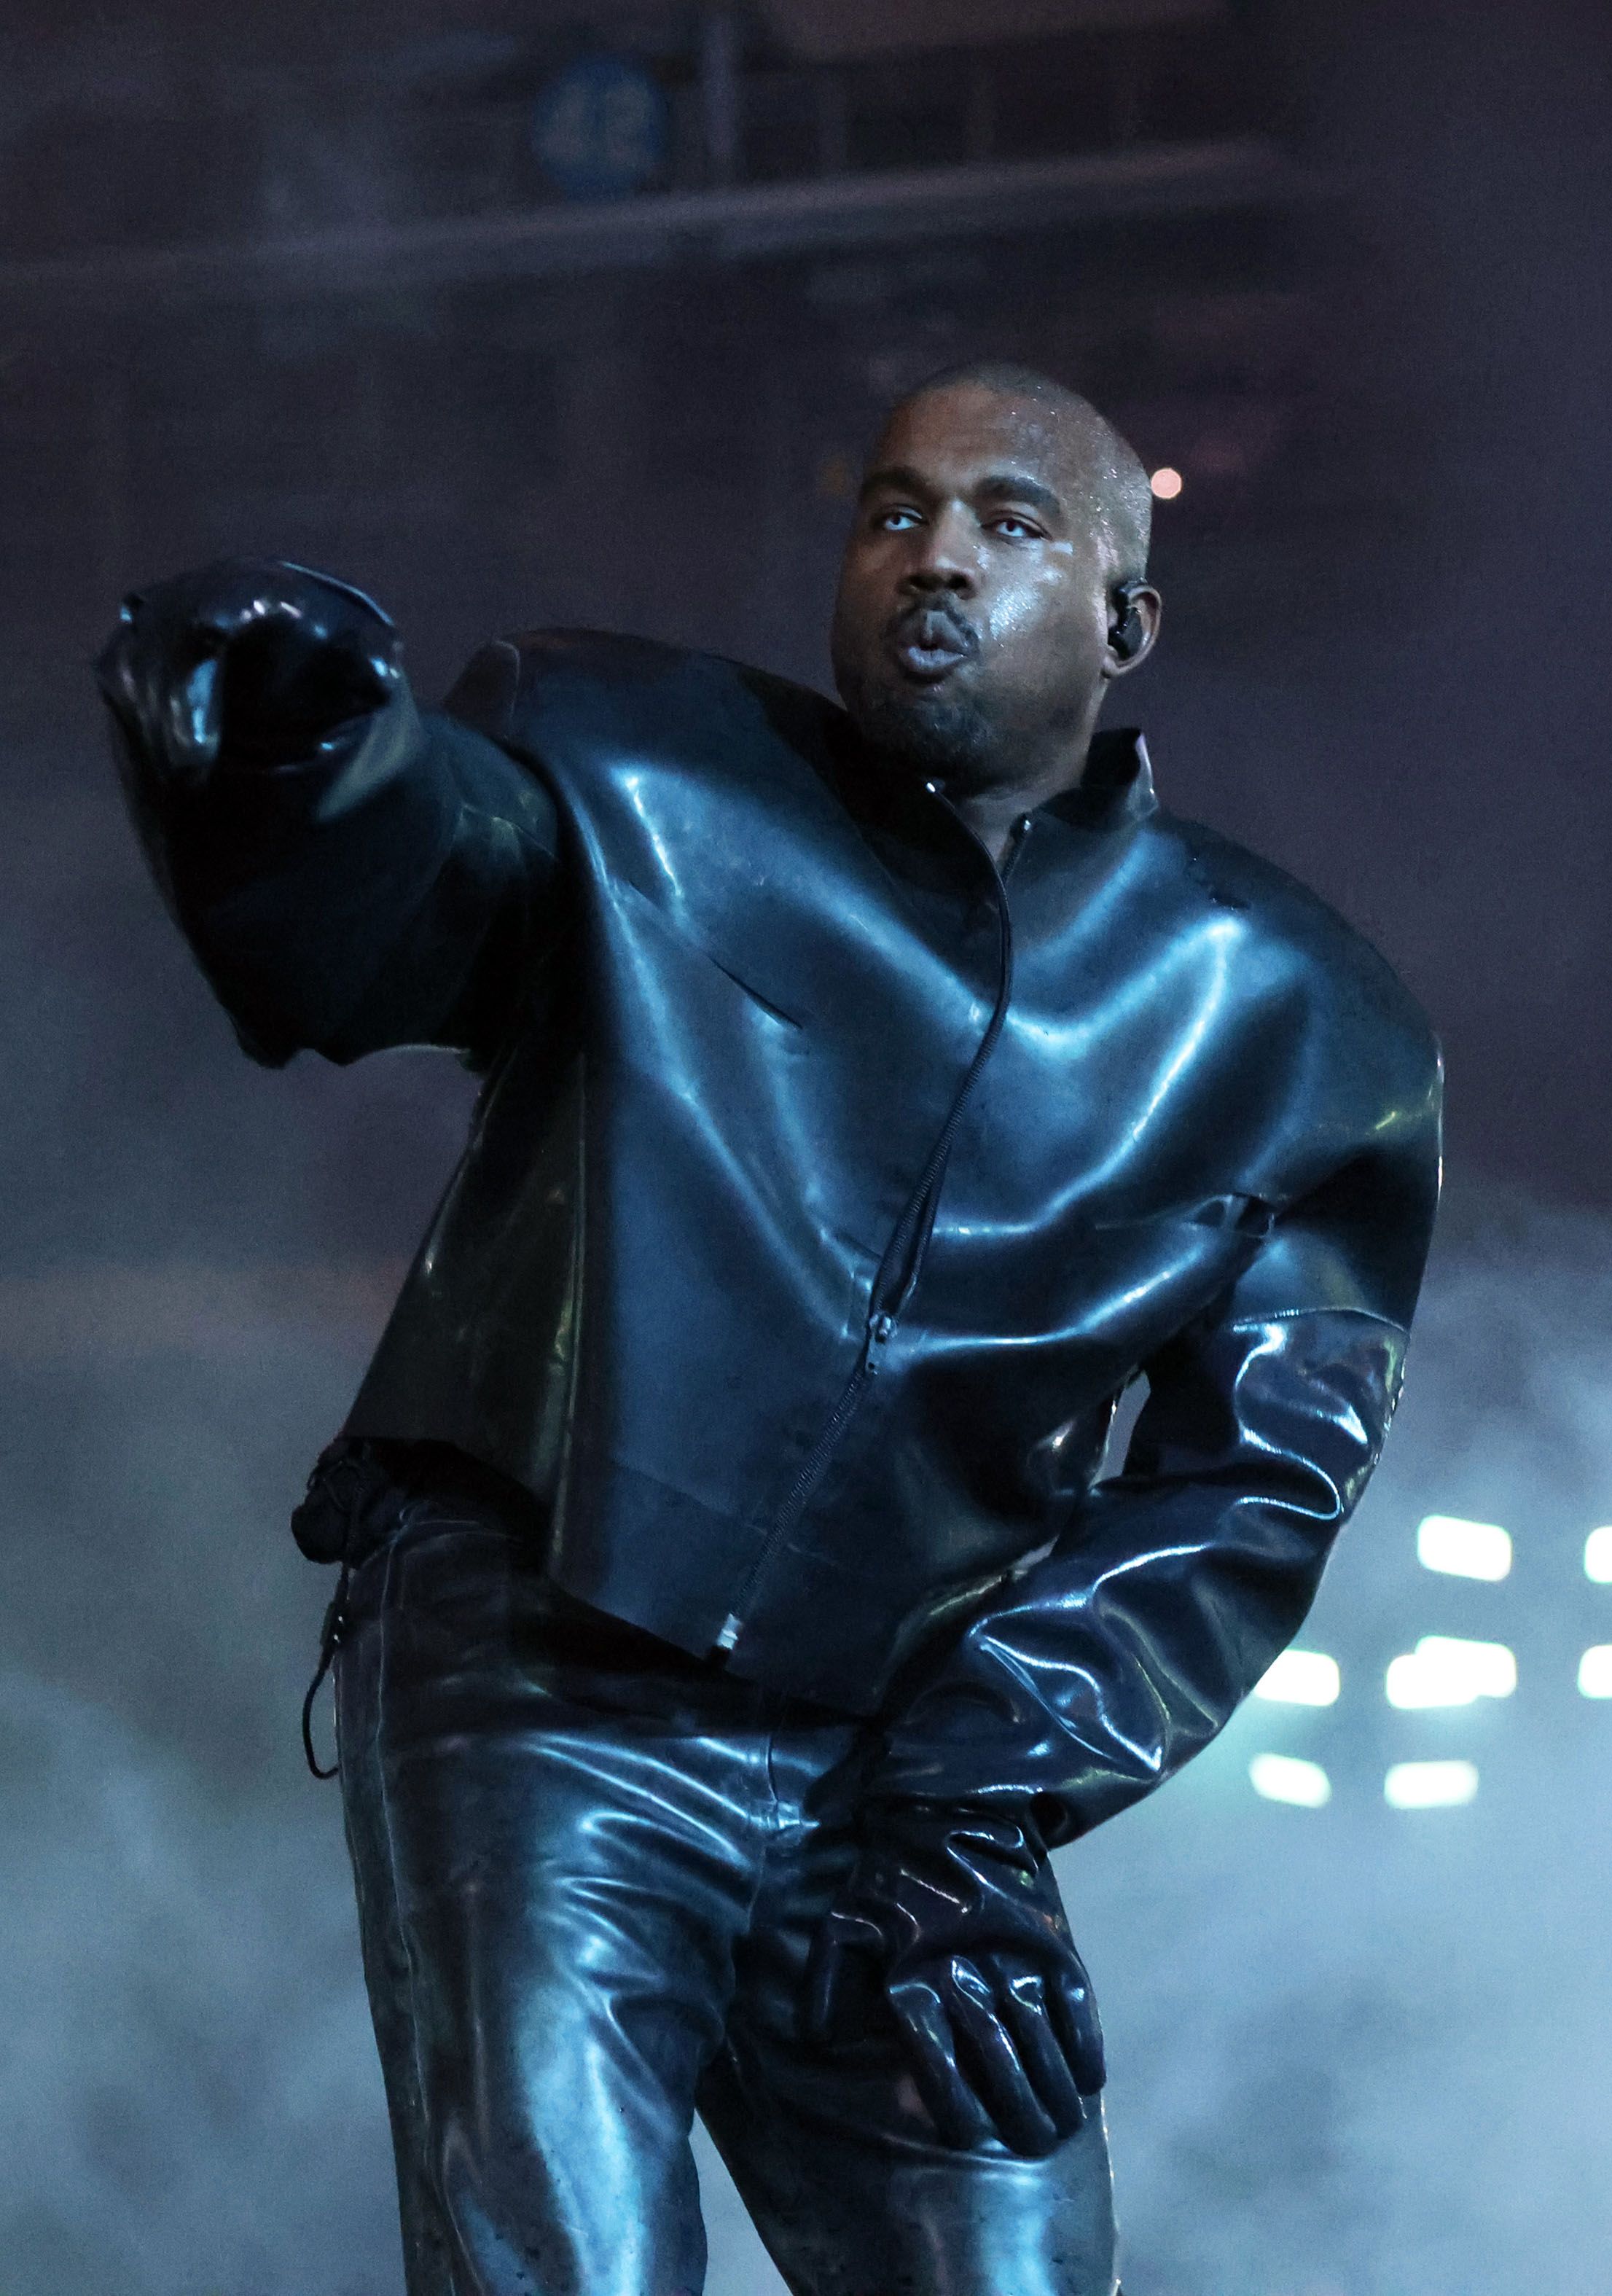 A marca Yeezy de Kanye West está indo ladeira abaixo, e há vários sinais nos bastidores